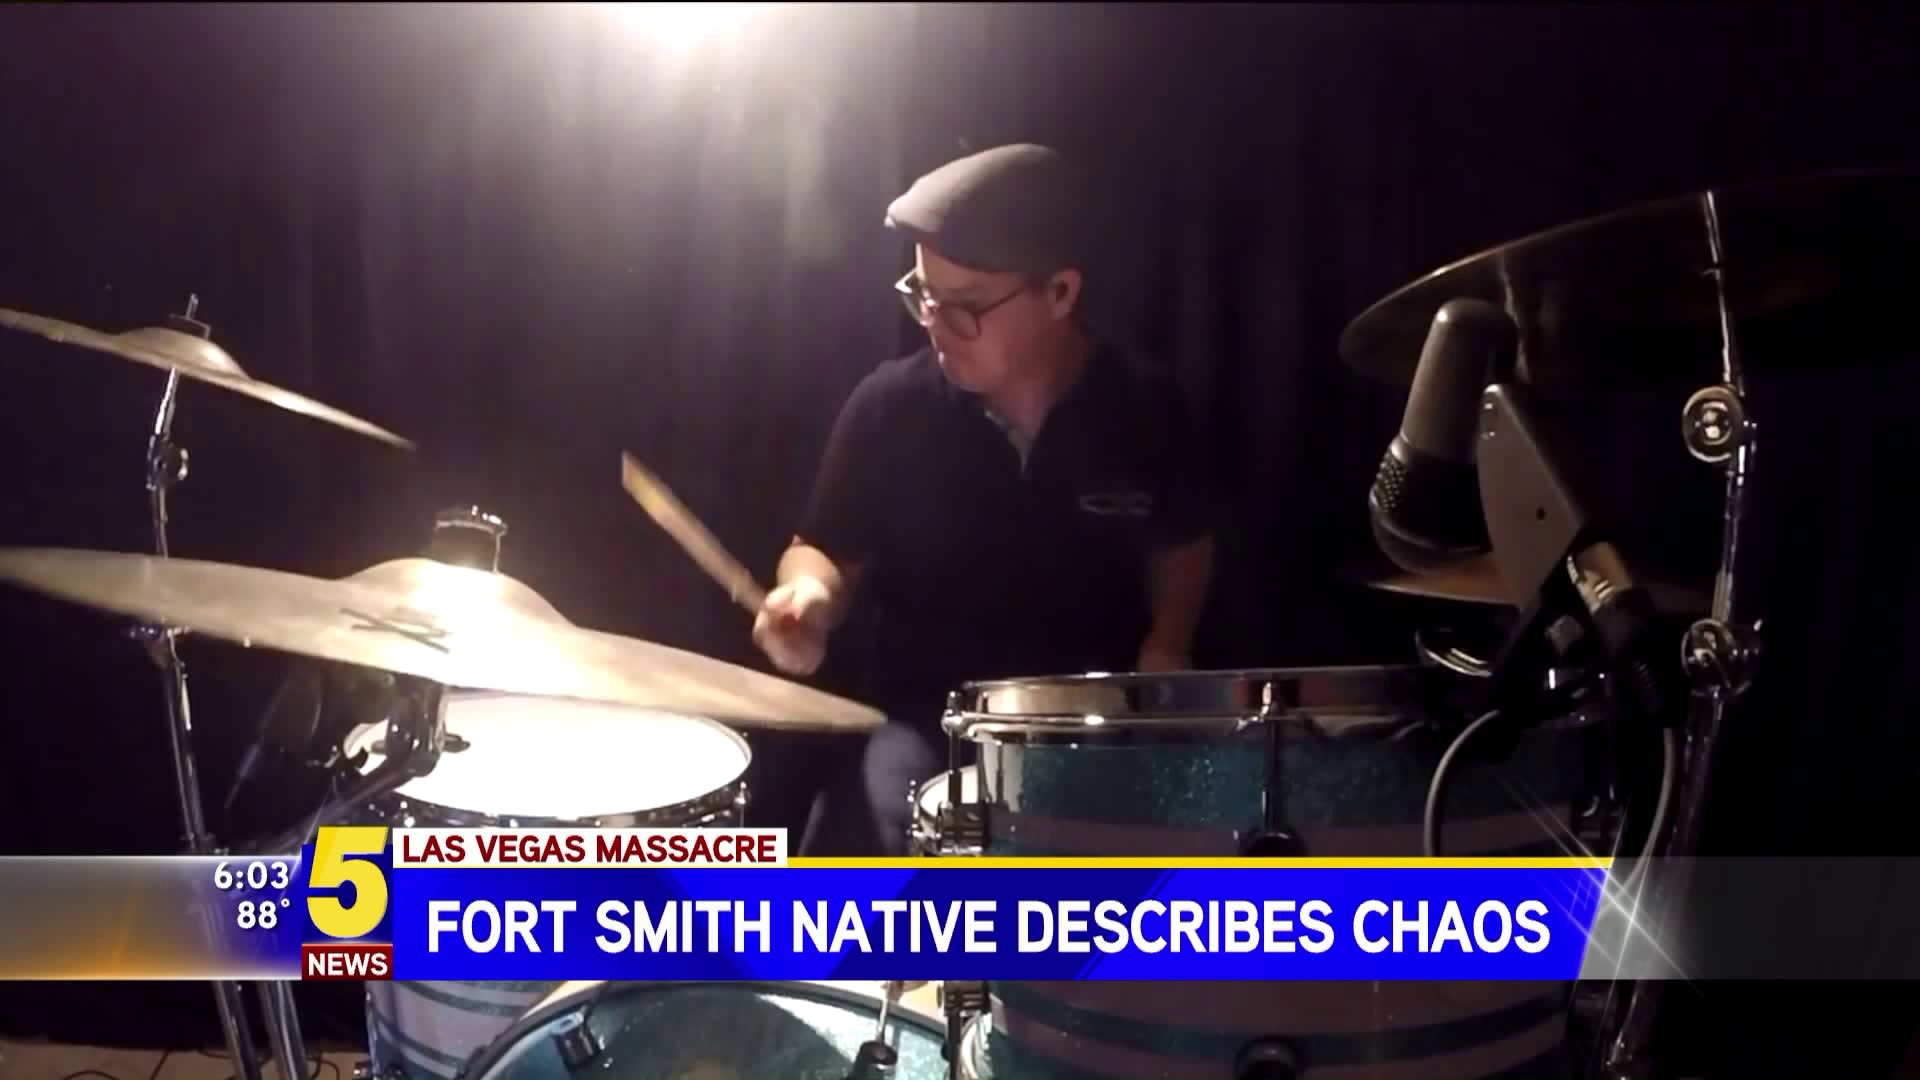 Fort Smith Native Describes Chaos